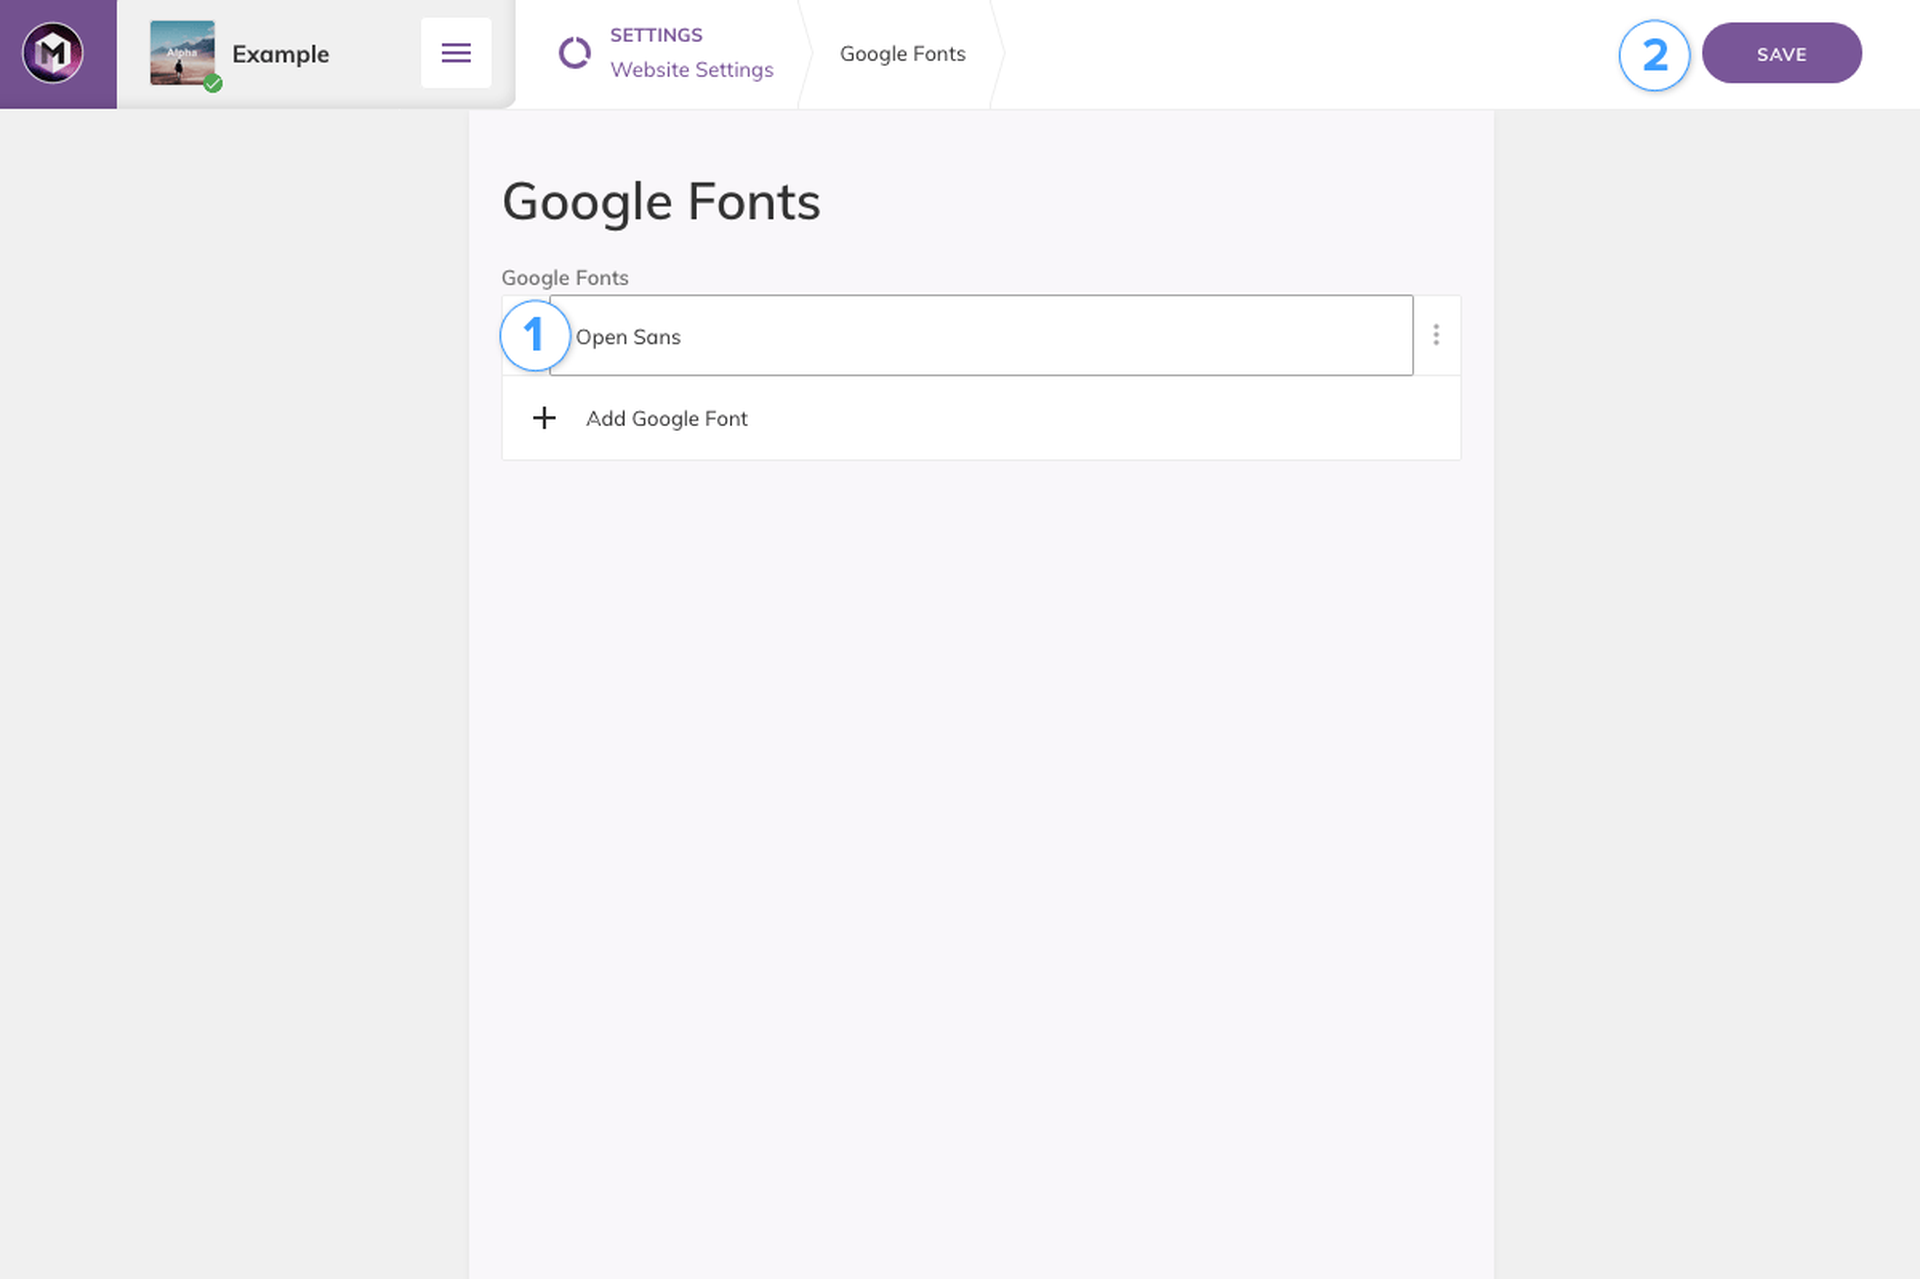 Adding Google Fonts